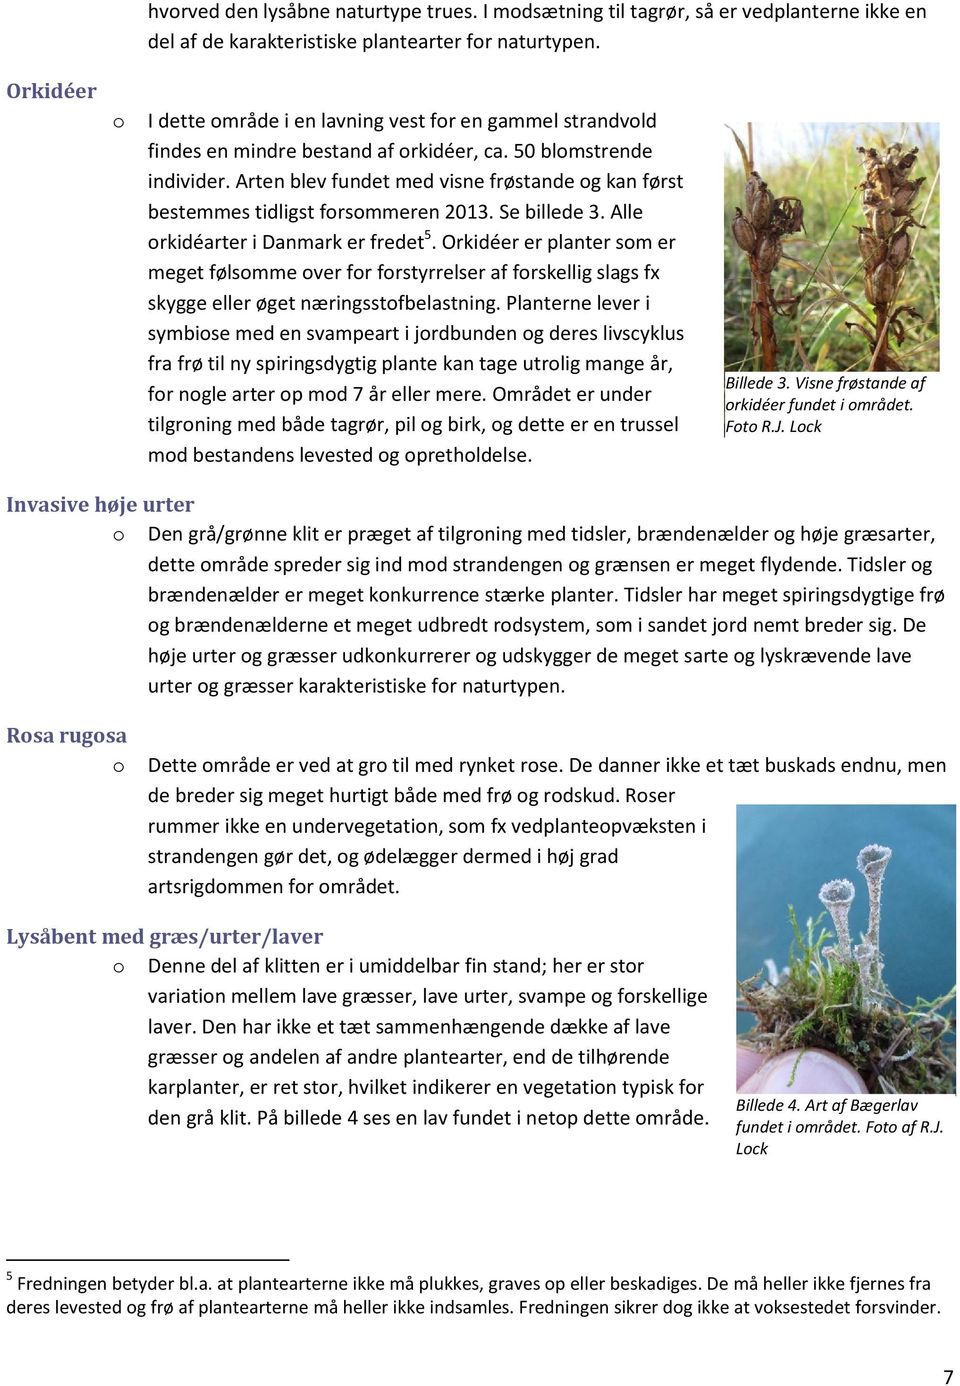 Arten blev fundet med visne frøstande g kan først bestemmes tidligst frsmmeren 2013. Se billede 3. Alle rkidéarter i Danmark er fredet 5.